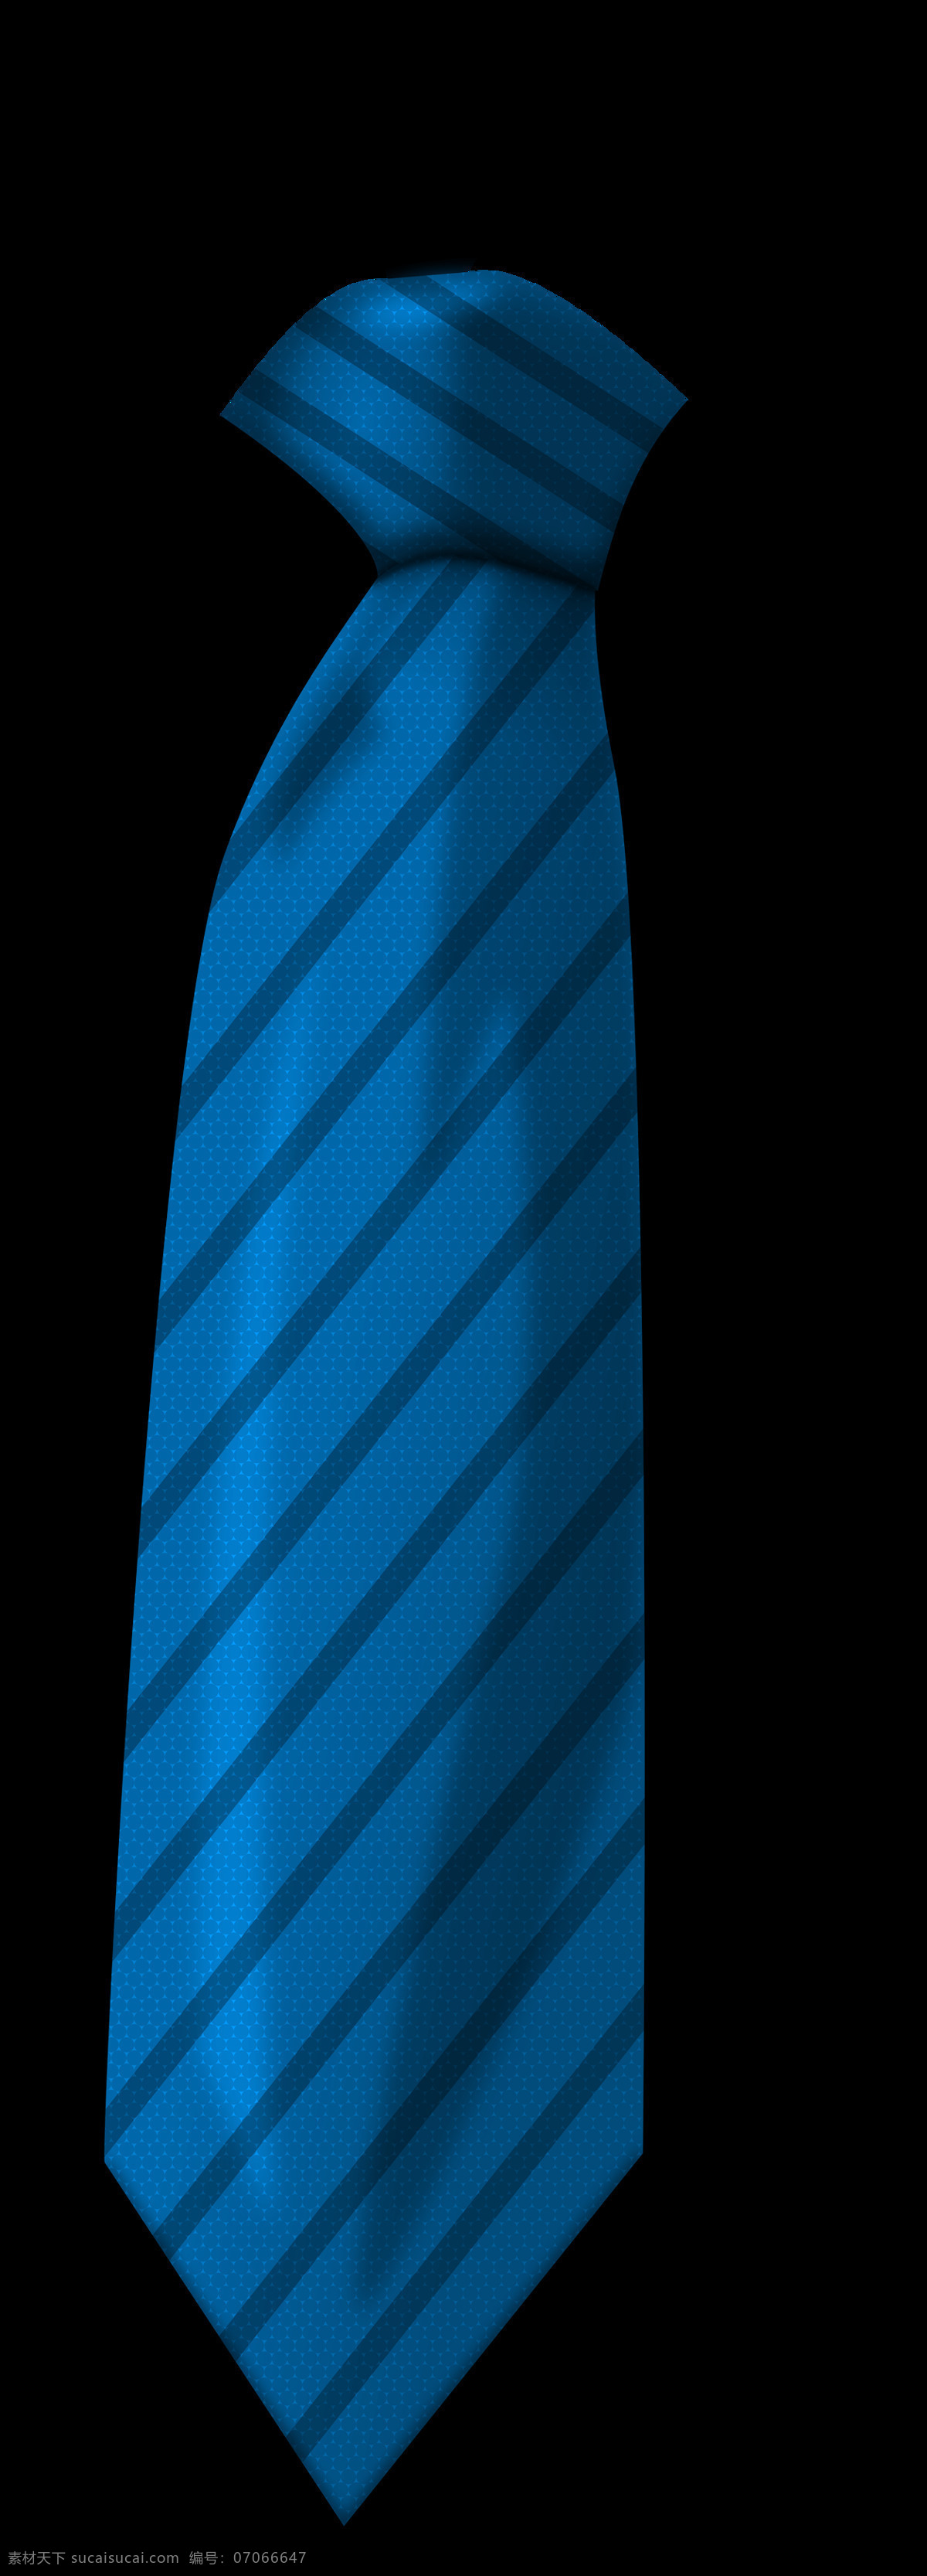 手绘 蓝色 条纹 领带 免 抠 透明 图 层 男士领带图片 领带节 短领带 ps 摸领带 扶领带 细领带 西装领带 女士领带 商务领带 正装领带 休闲领带 领带图片 条纹领带 格子领带